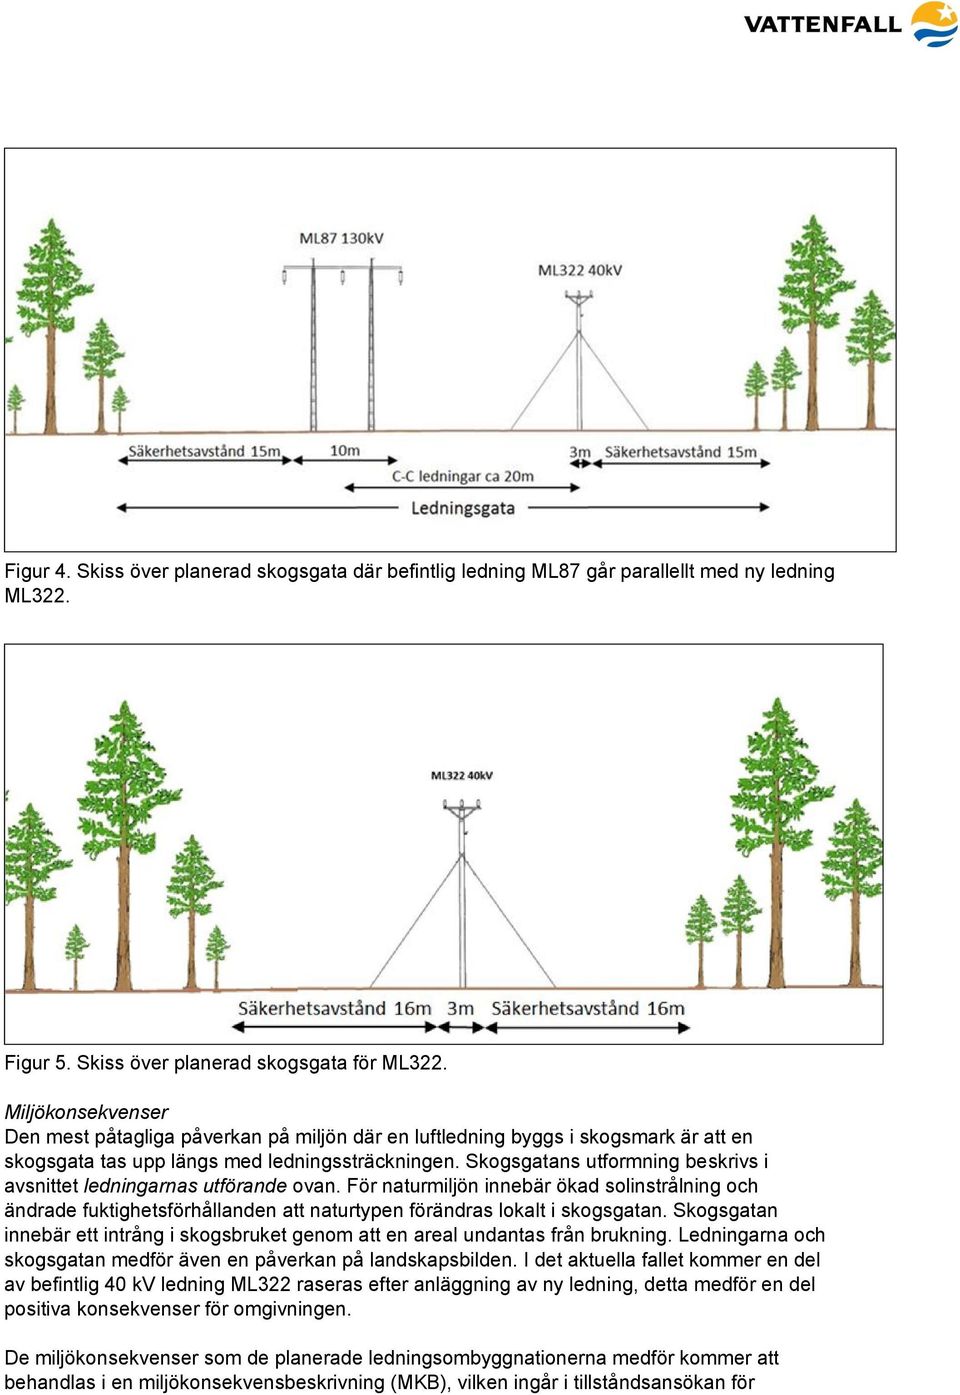 Skogsgatans utformning beskrivs i avsnittet ledningarnas utförande ovan. För naturmiljön innebär ökad solinstrålning och ändrade fuktighetsförhållanden att naturtypen förändras lokalt i skogsgatan.